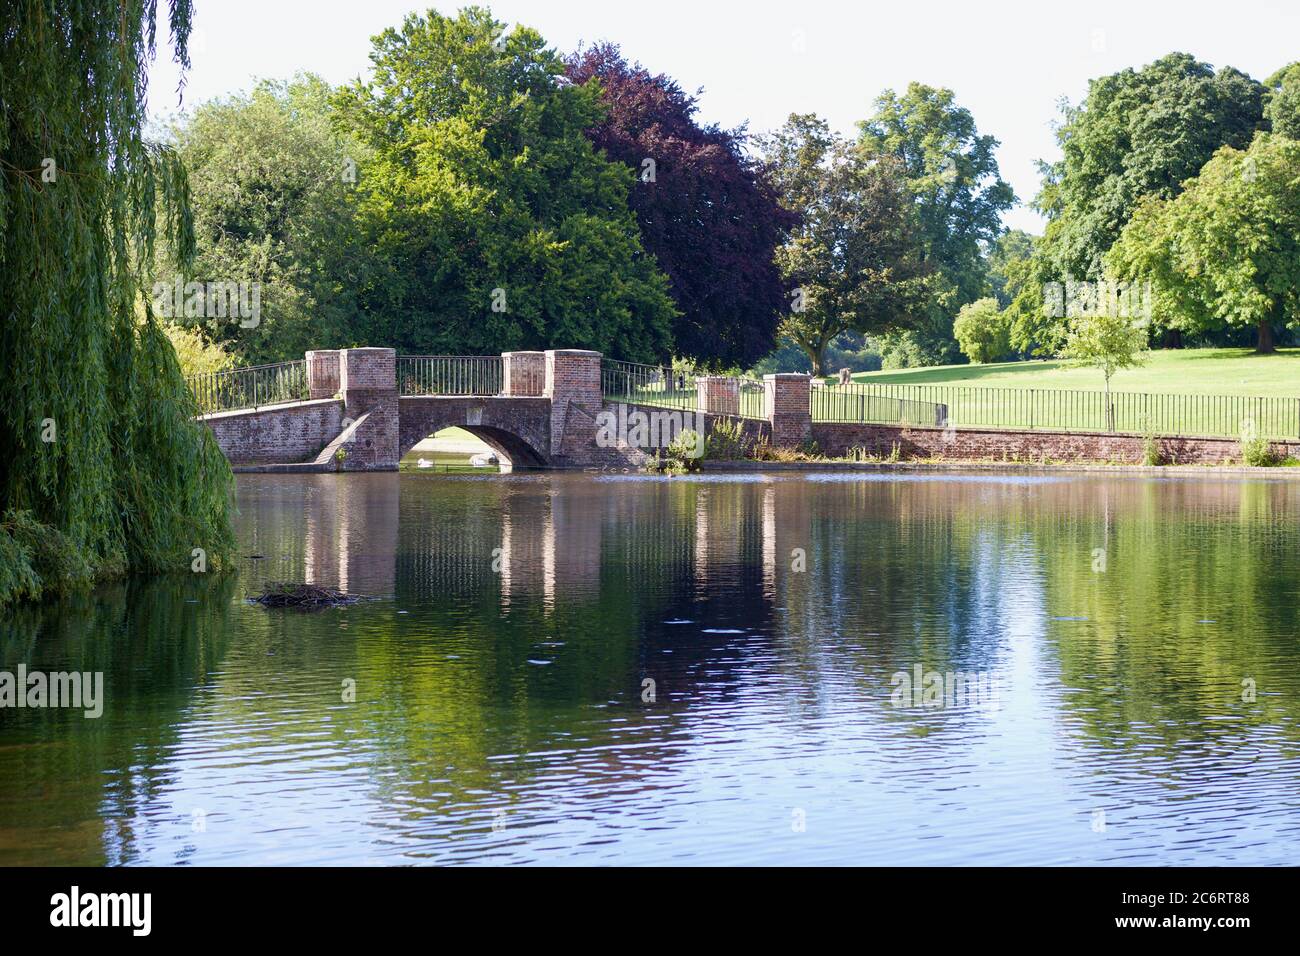 11 luglio 2020 - St Albans, Regno Unito: Lago al Verulam Park con ponte e alberi Foto Stock